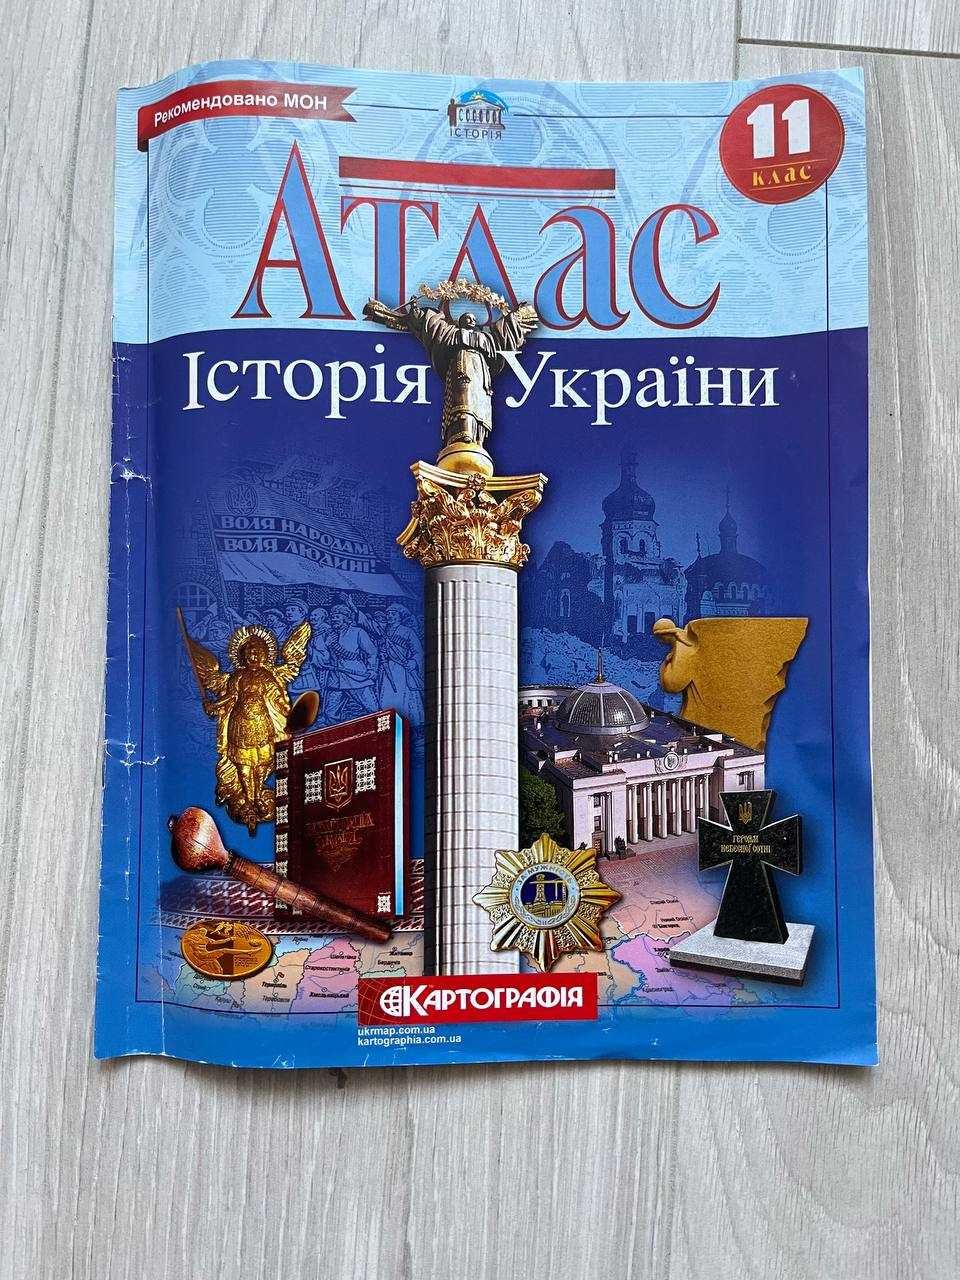 Атласи 11 клас всесвітня історія, історія України, географія